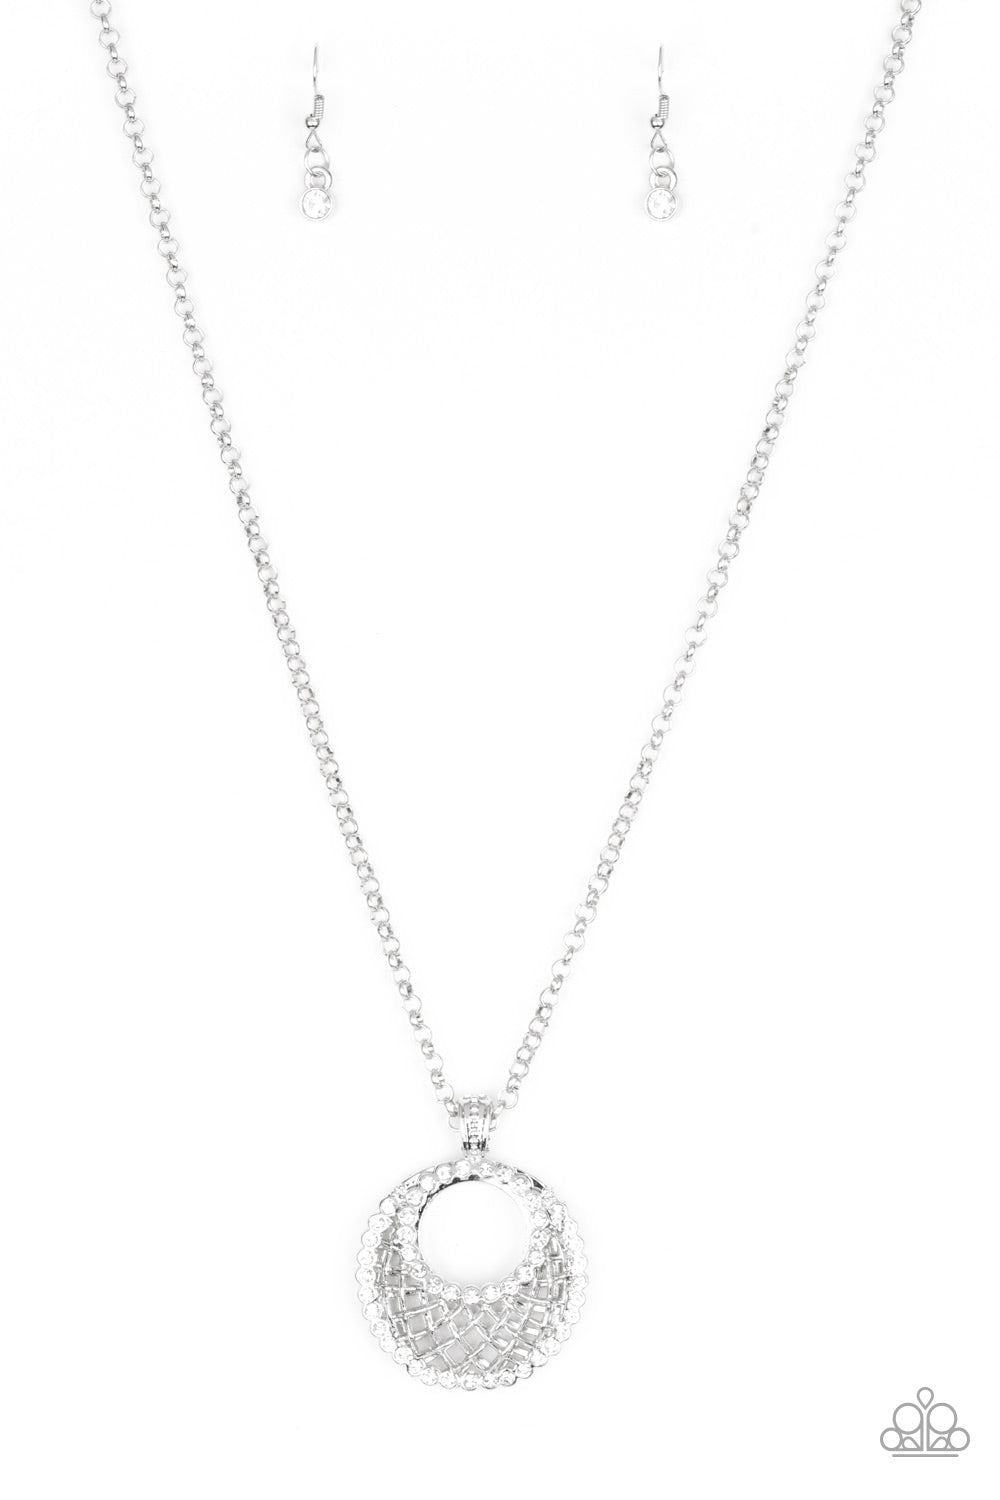 Net Worth - White Rhinestone & Silver Net-Like Pattern Pendant Paparazzi Necklace & matching earrings